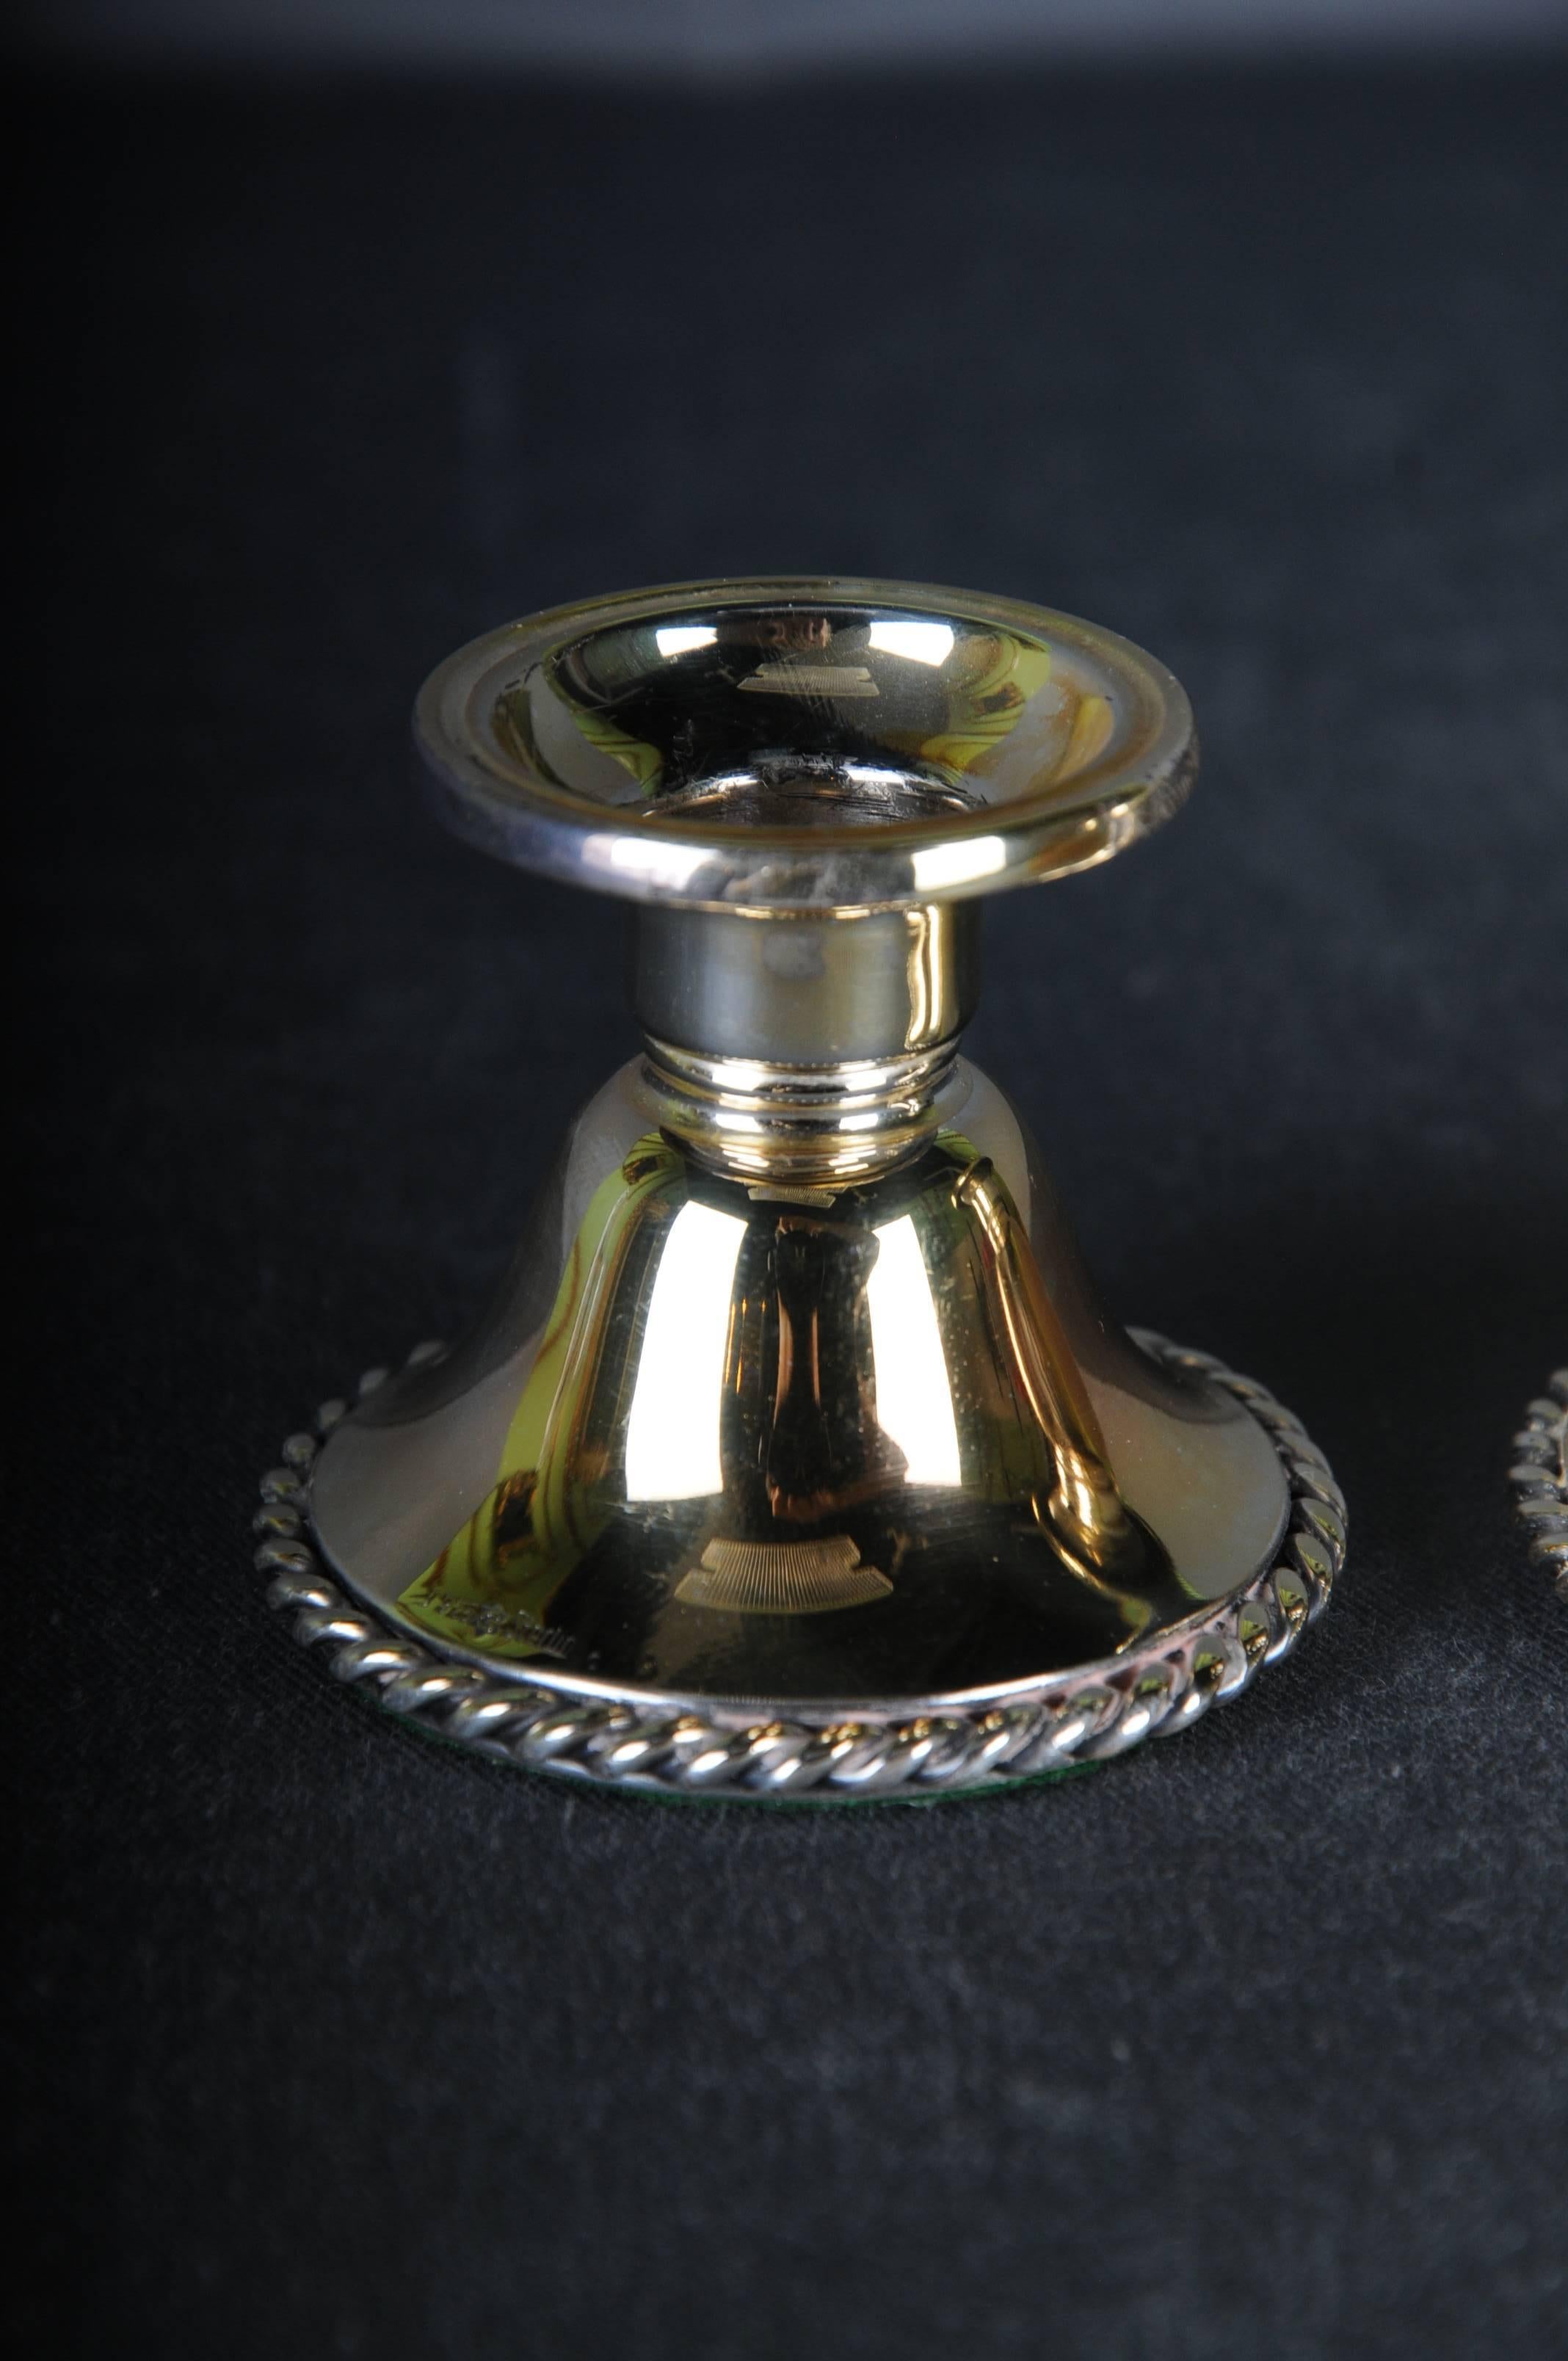 2 klassische Silber Kerzenleuchter 925 Sterling Deutschland
Halbmond und Krone vergoldet



Der Kerzenständer ist gewichtet
Gewicht: 126 g

Der Zustand ist auf den Bildern zu sehen.